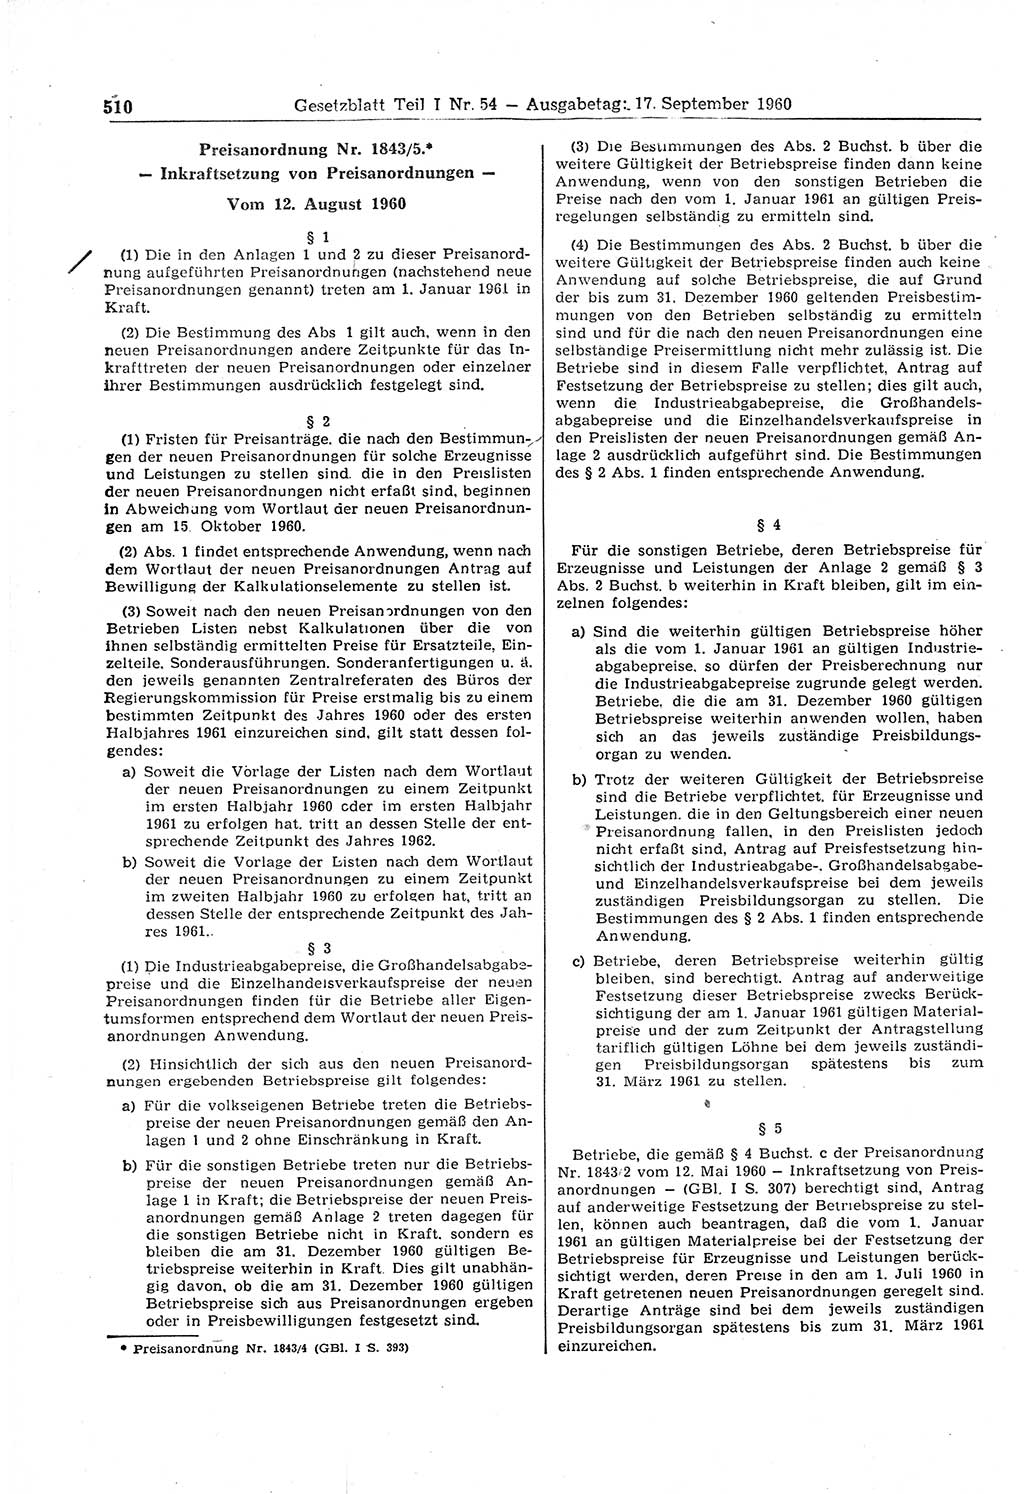 Gesetzblatt (GBl.) der Deutschen Demokratischen Republik (DDR) Teil Ⅰ 1960, Seite 510 (GBl. DDR Ⅰ 1960, S. 510)